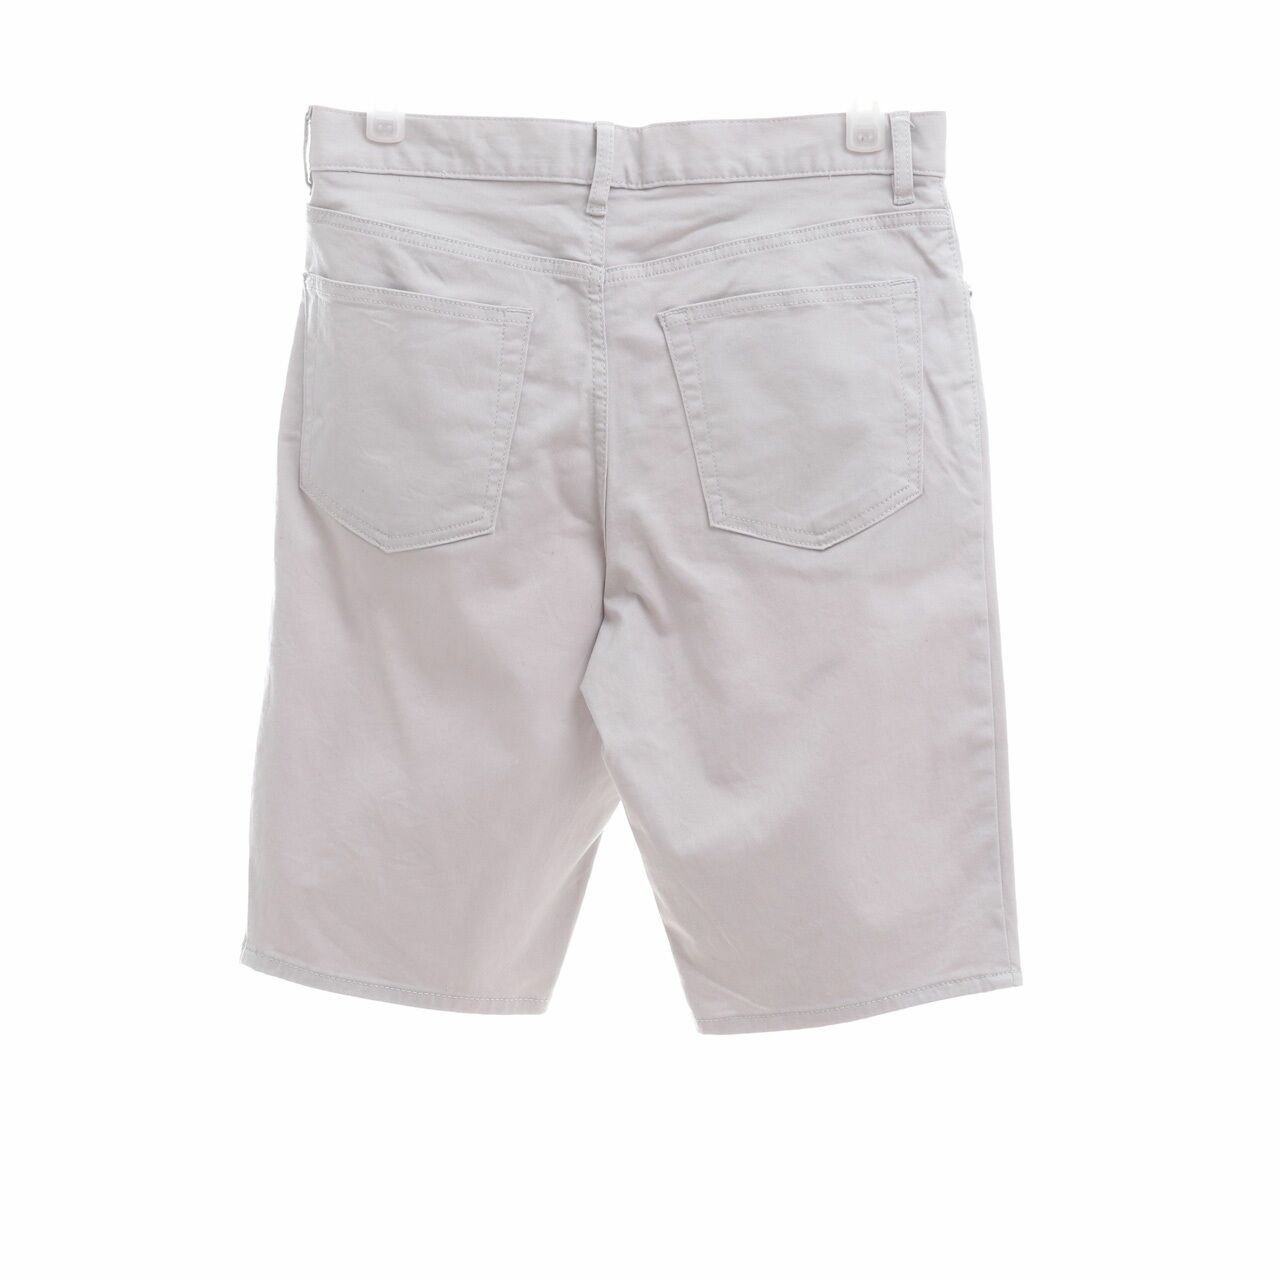 H&M Grey Slim Fit Short Pants